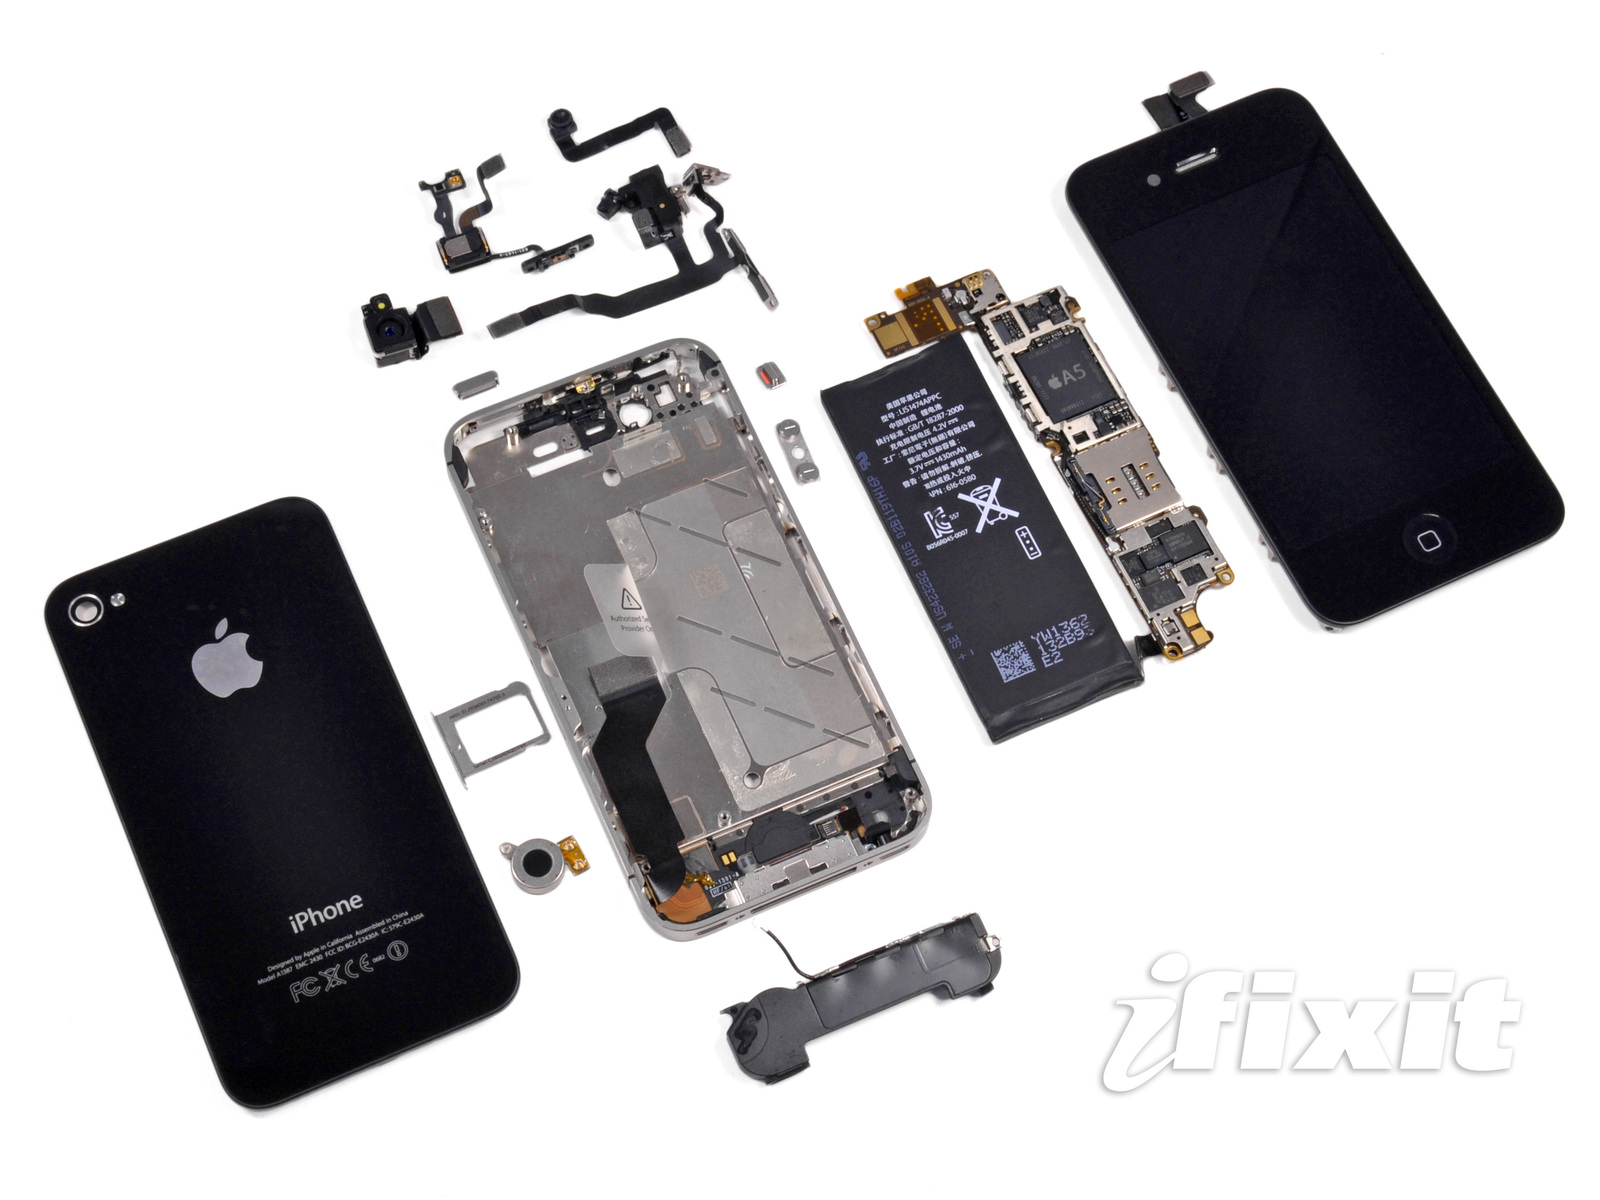 iPhone 4S in Einzelteile zerlegt